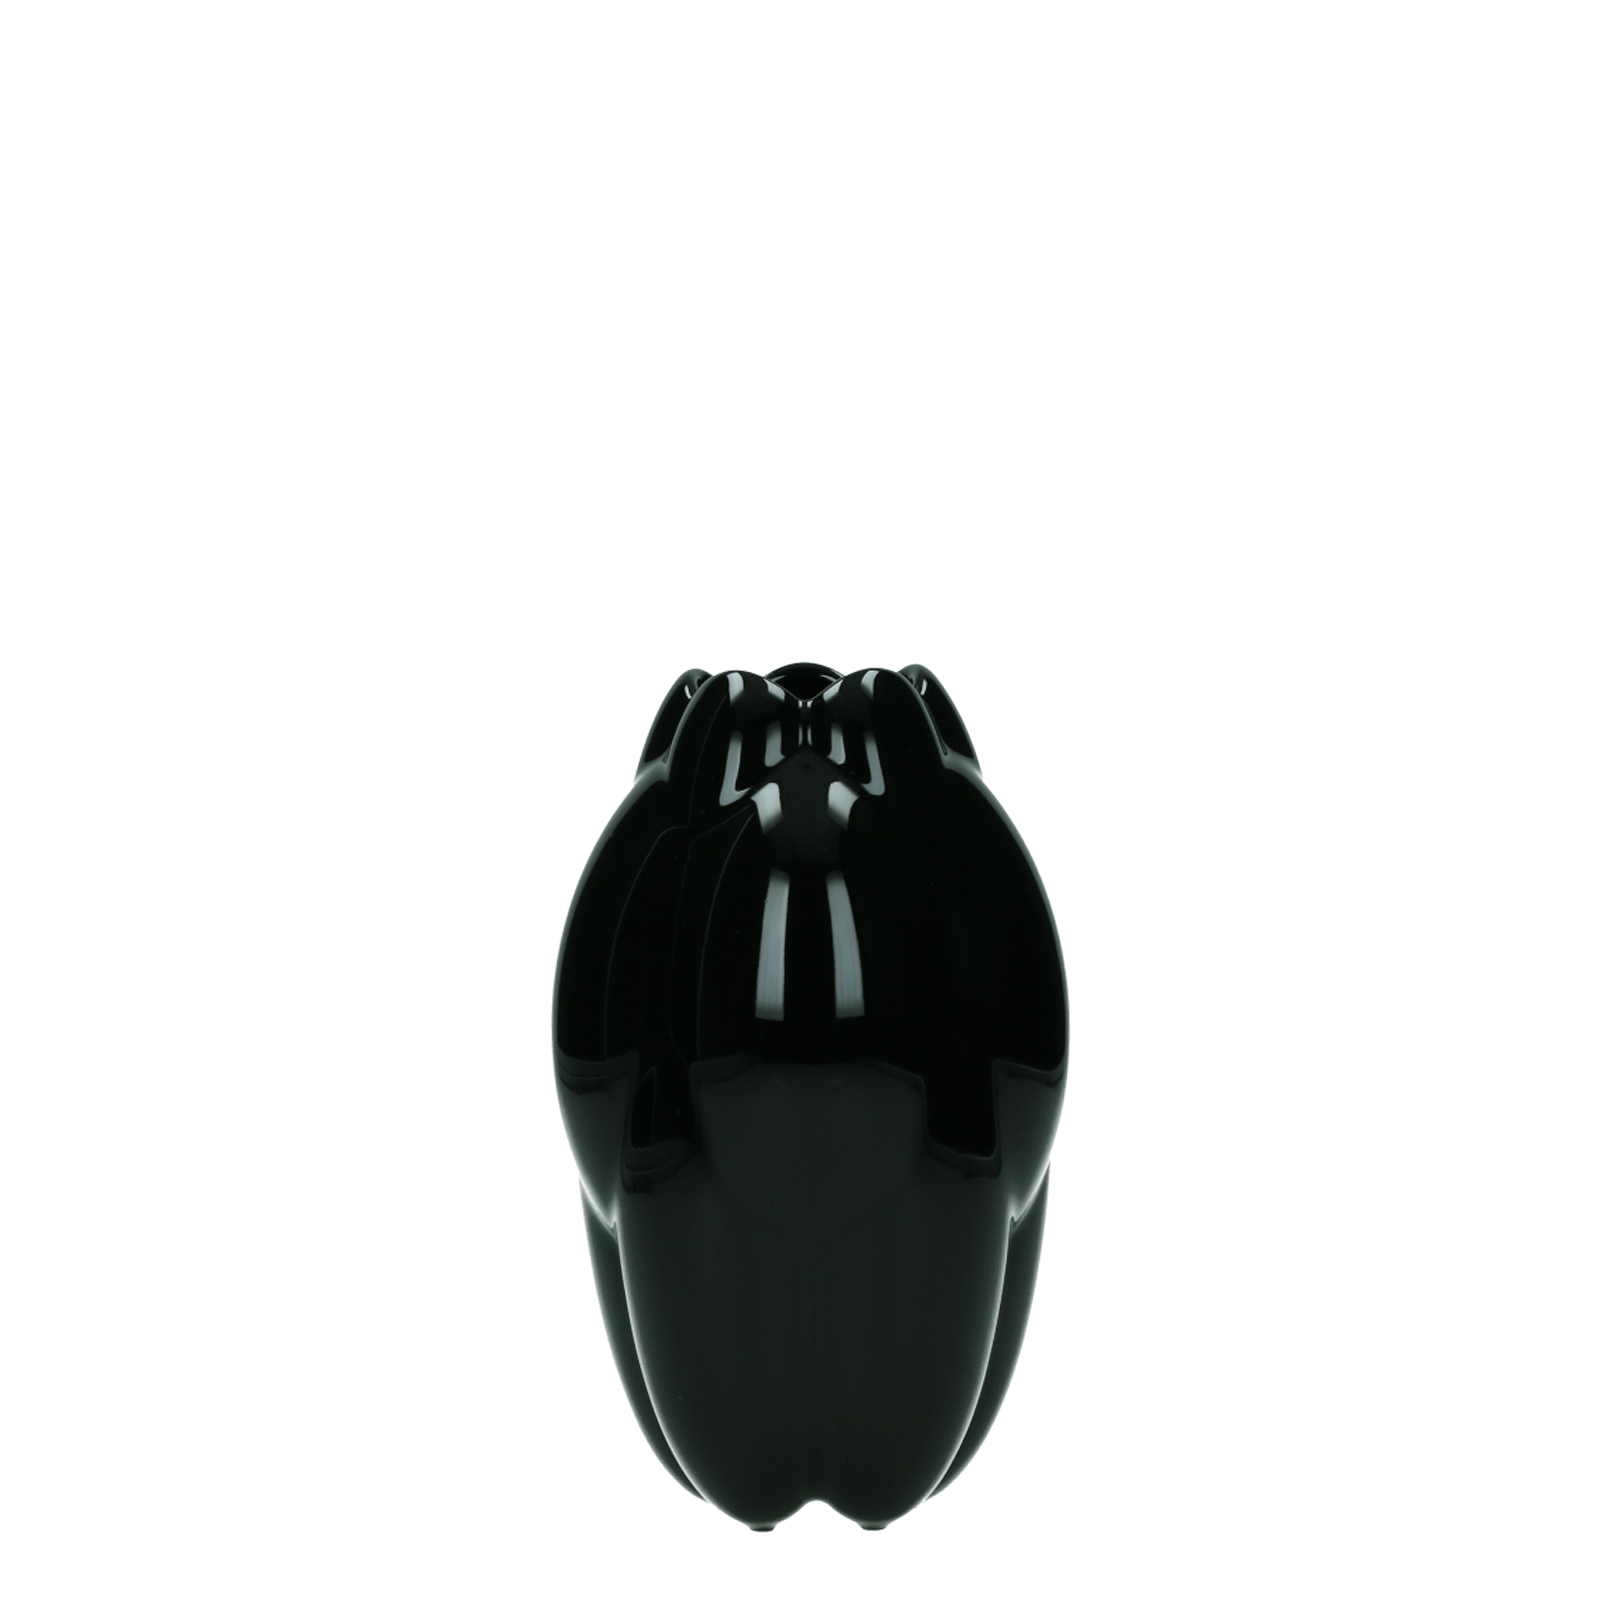 Wazon Rosenthal Core Black 16 cm